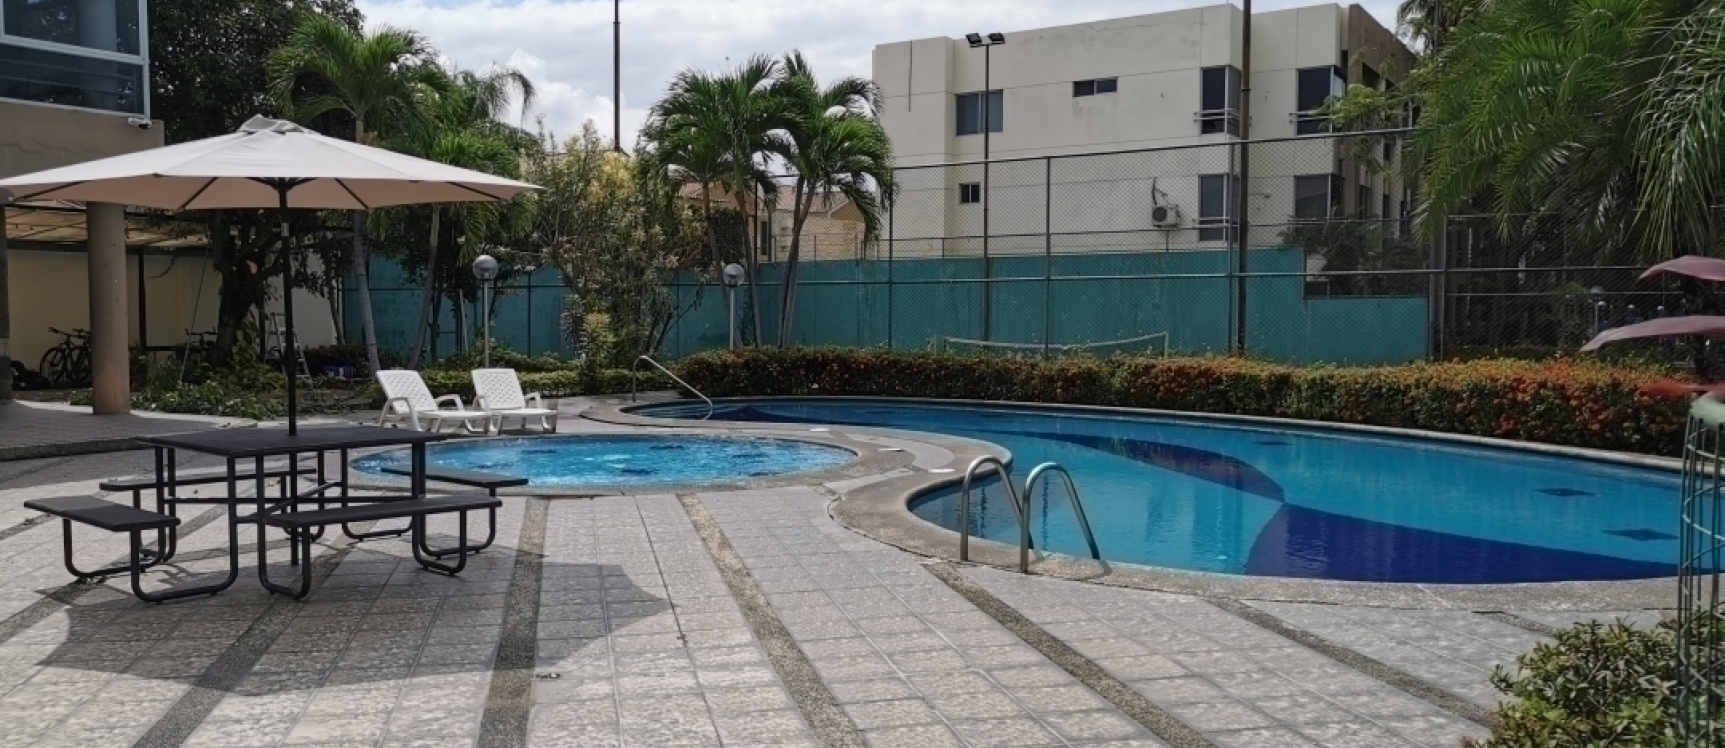 GeoBienes - Departamento en alquiler en la Urbanización San Andrés, Vía Samborondón - Plusvalia Guayaquil Casas de venta y alquiler Inmobiliaria Ecuador